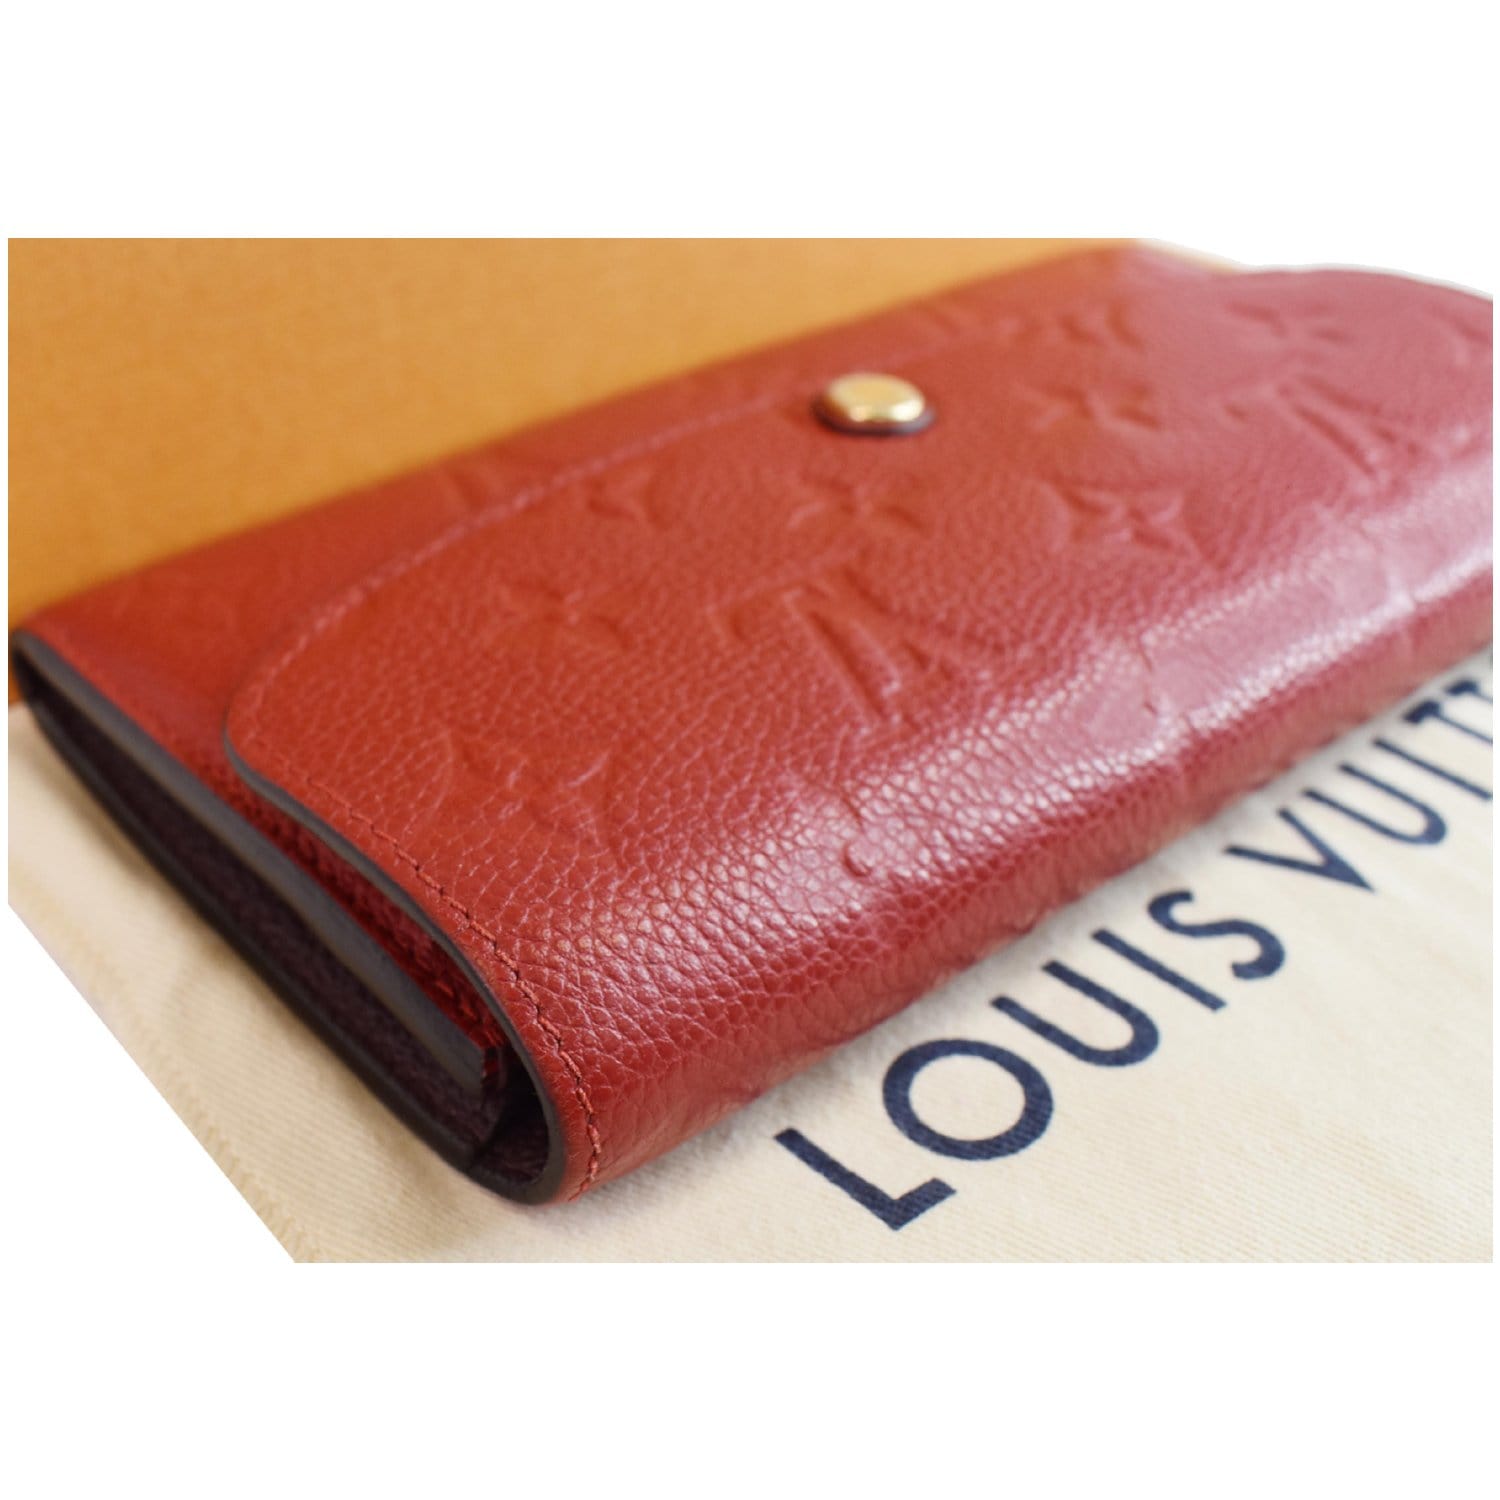 Authentic Louis Vuitton Emilie Wallet Monogram Empriente Leather